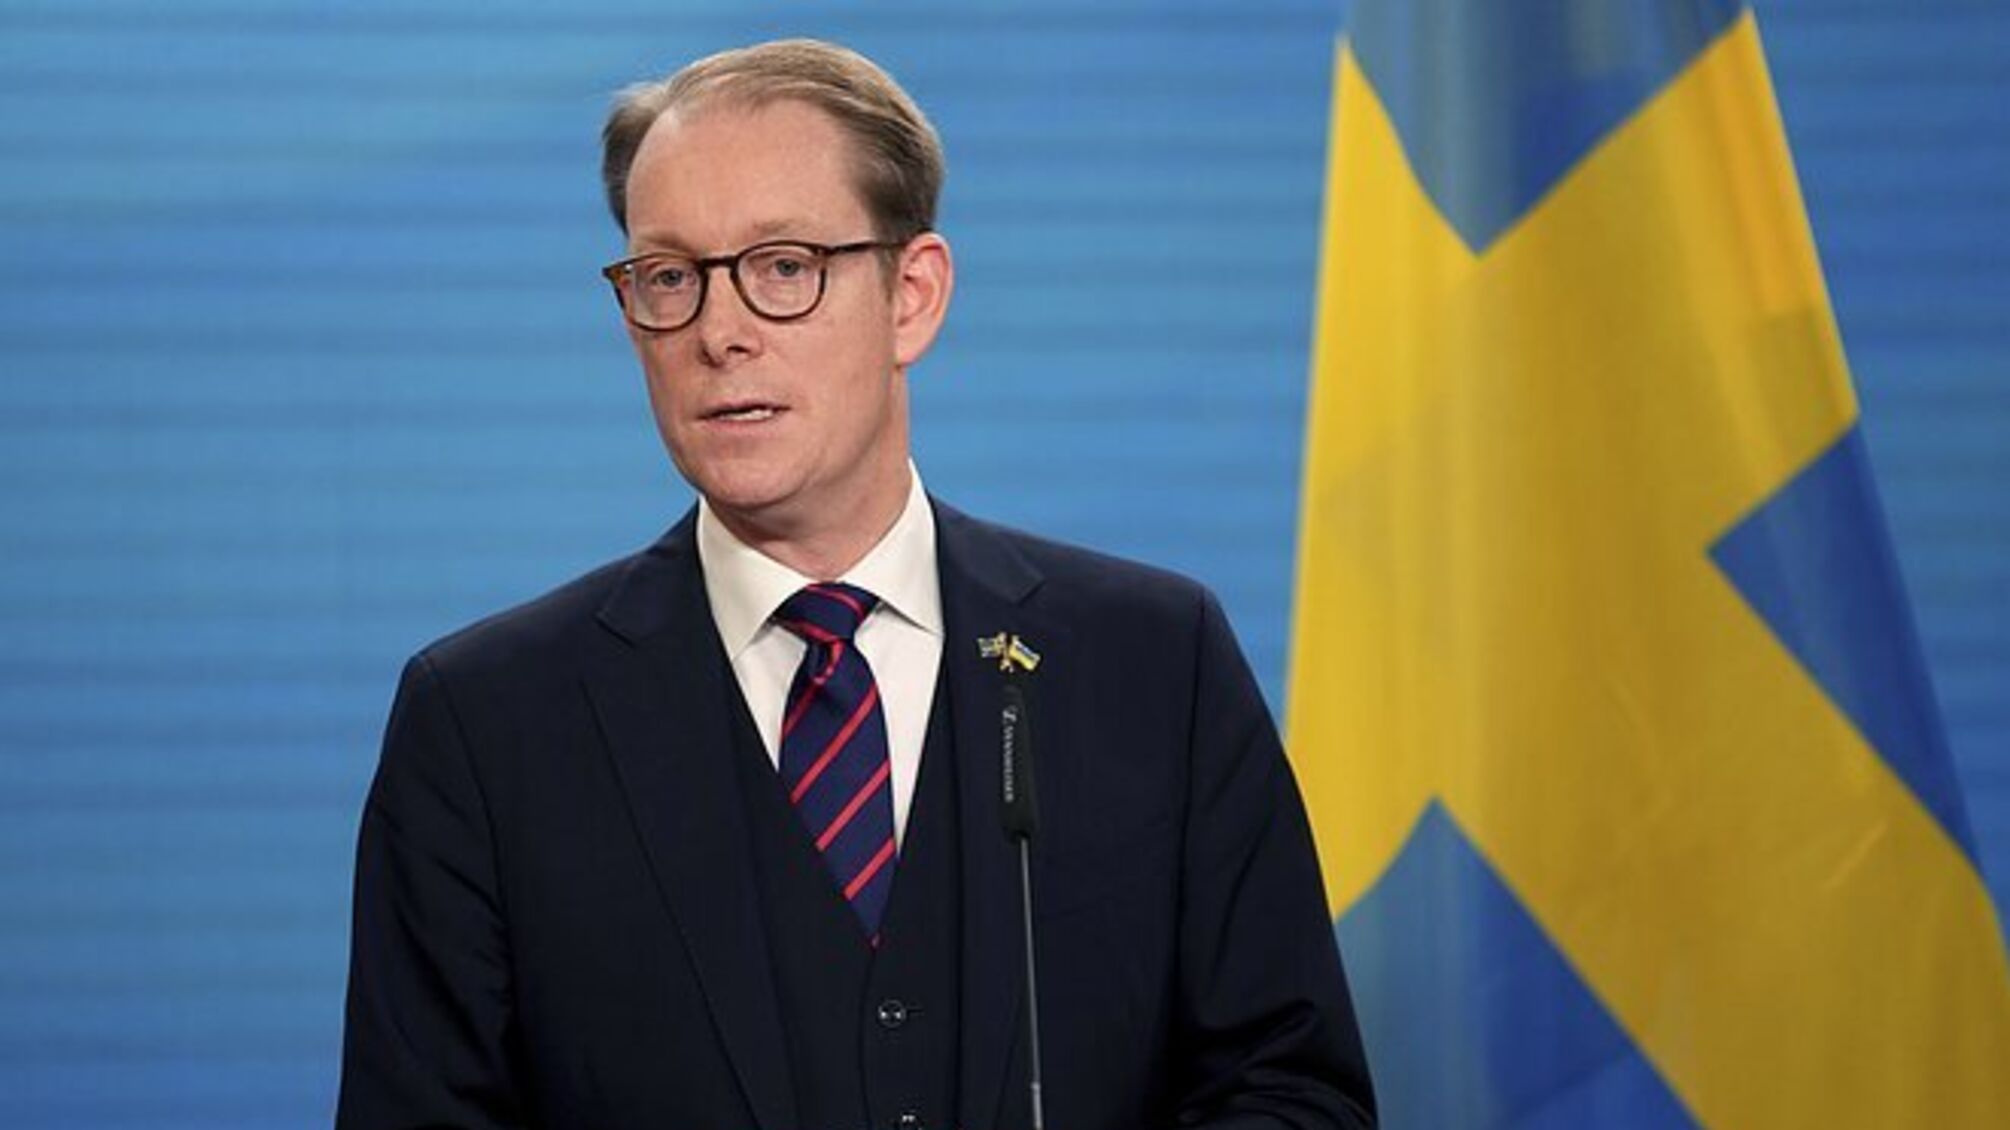 Швеция передает Украине крупнейший в истории отношений пакет военной помощи